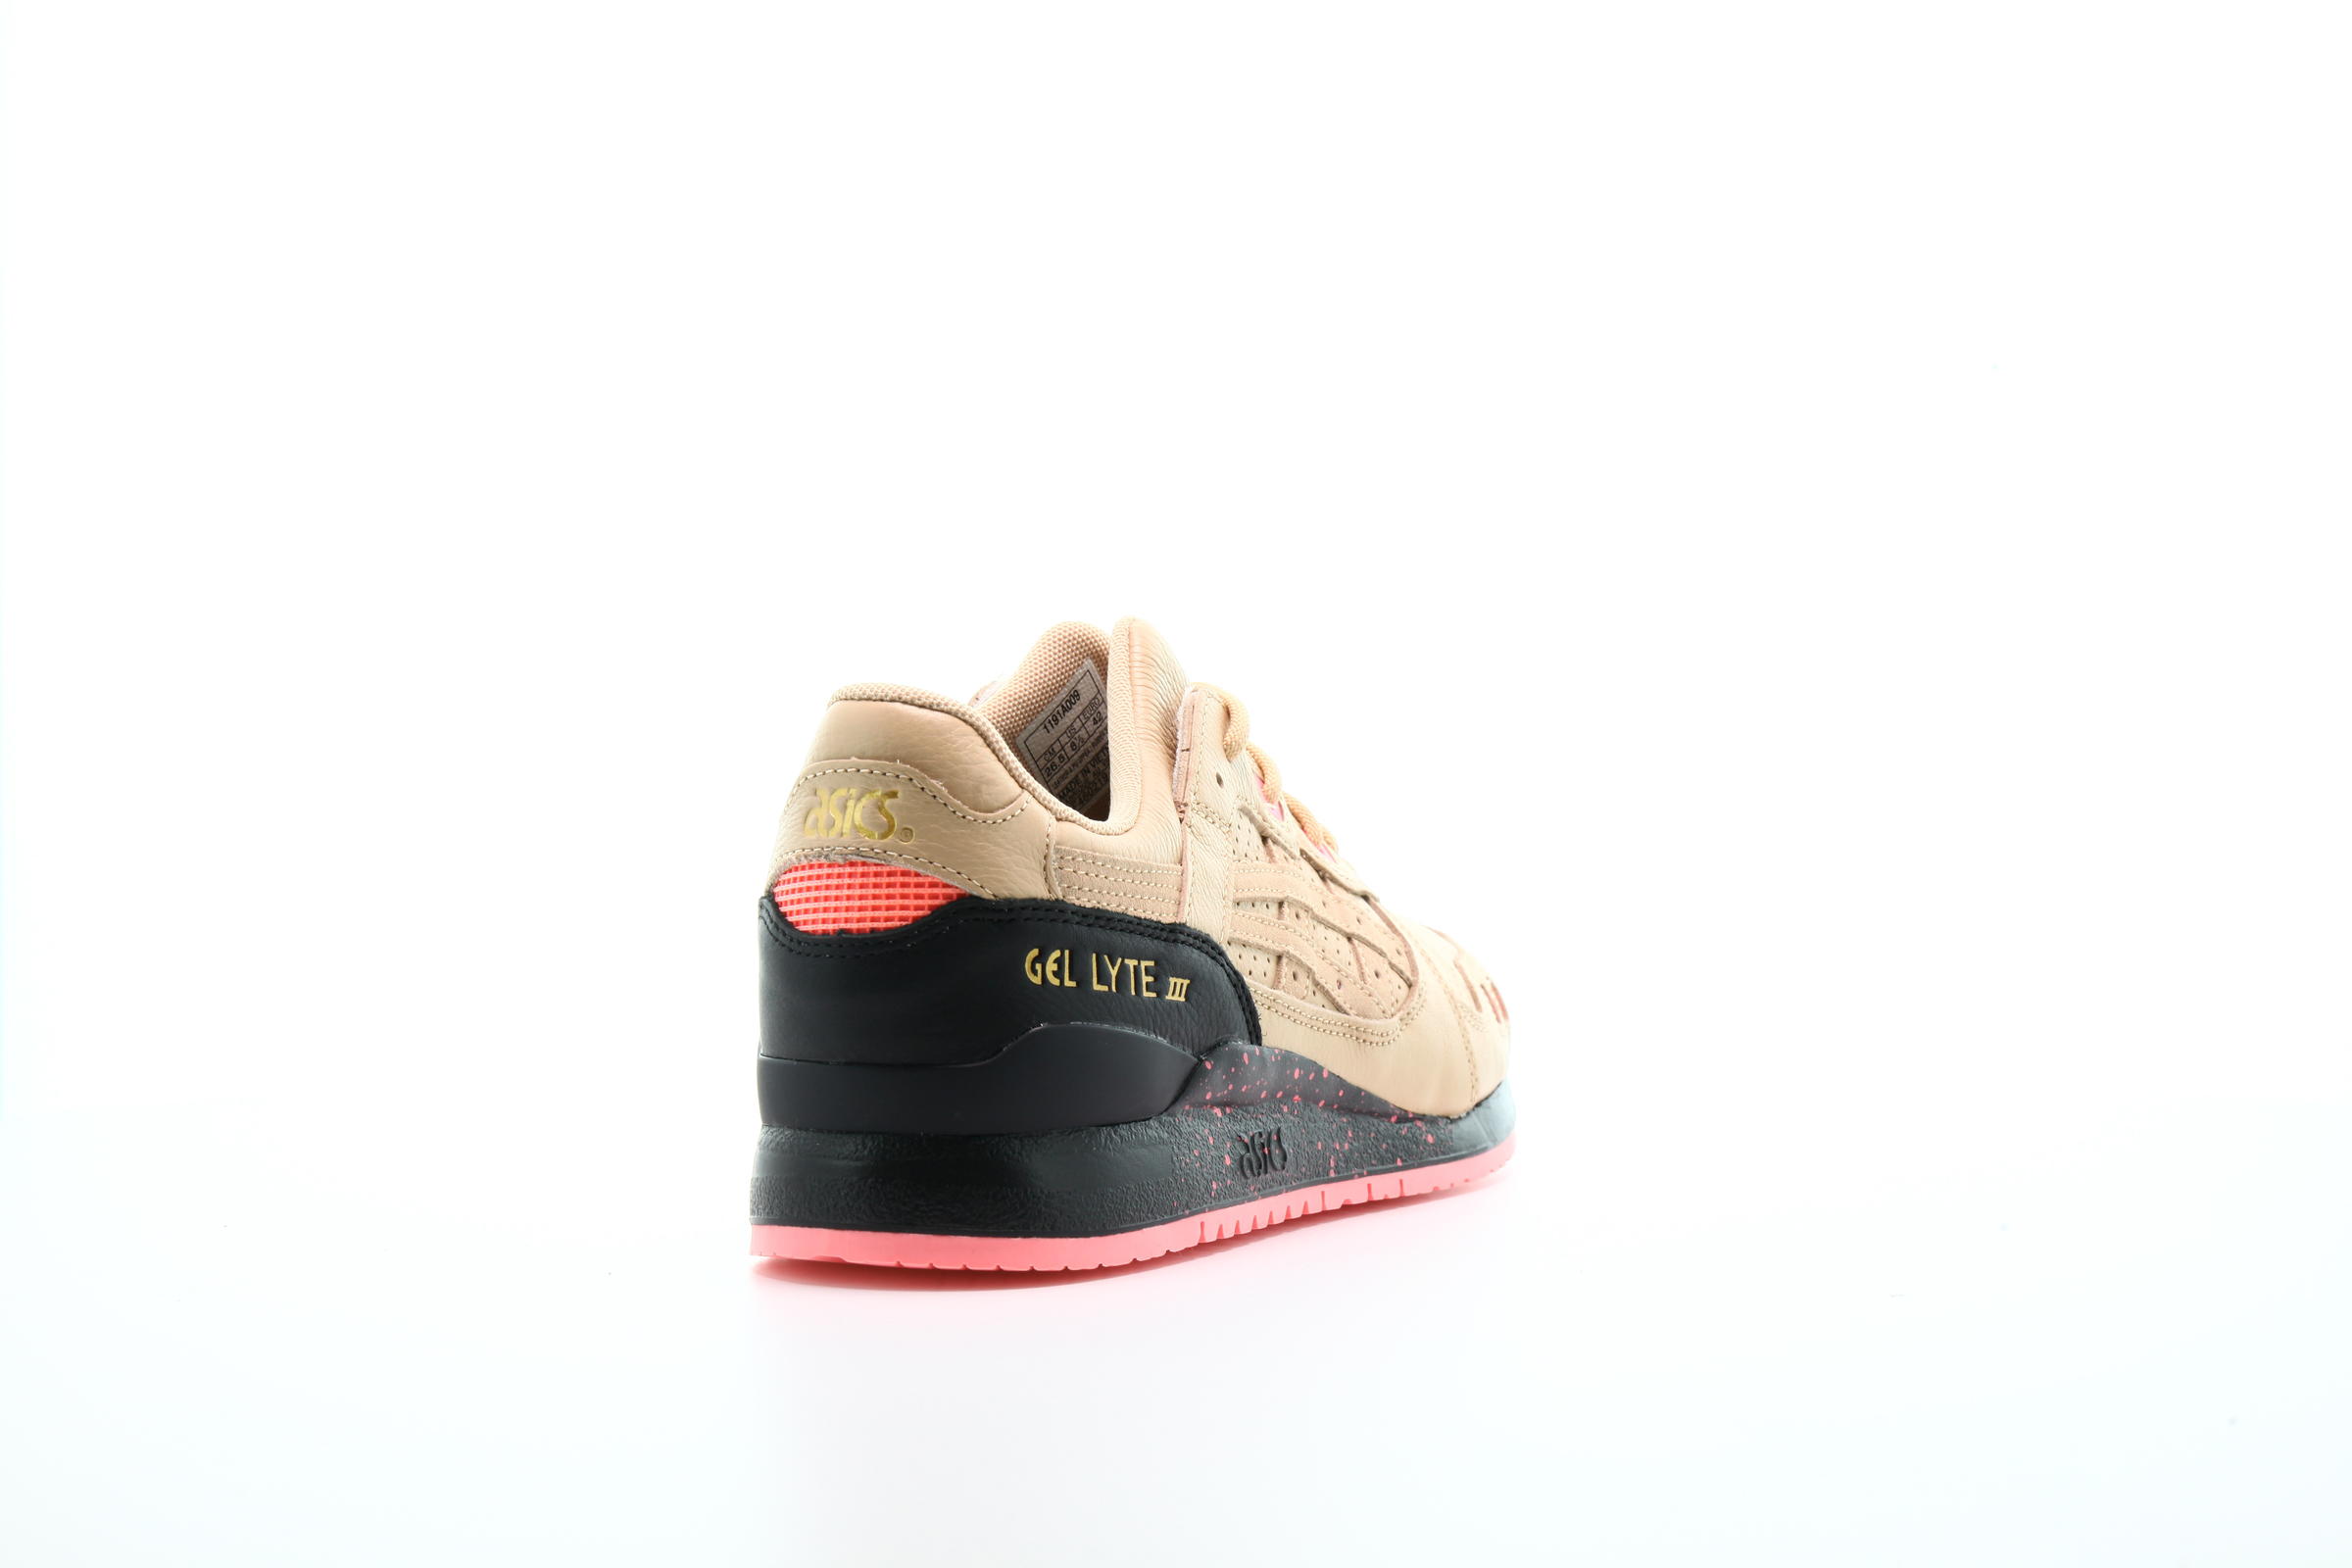 Asics x Sneakerfreaker GEL-LYTE III "Beige"